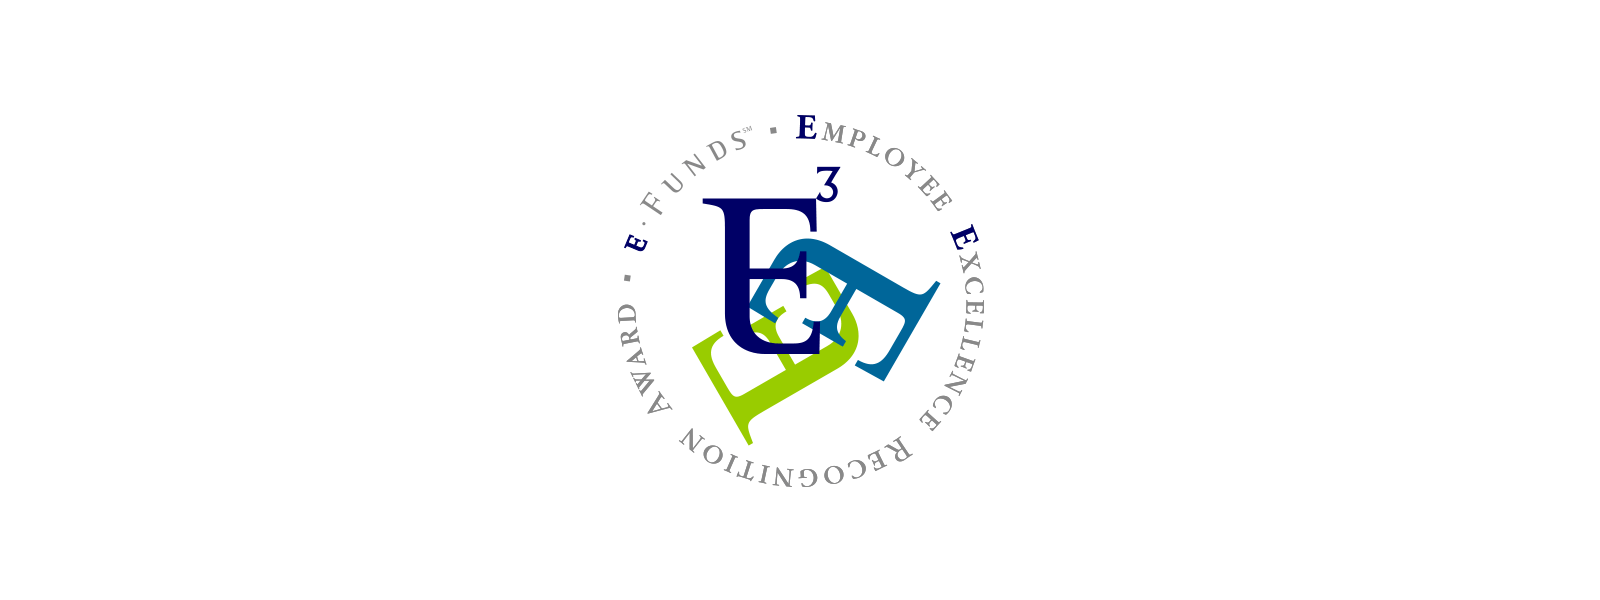 eFunds E3 logo